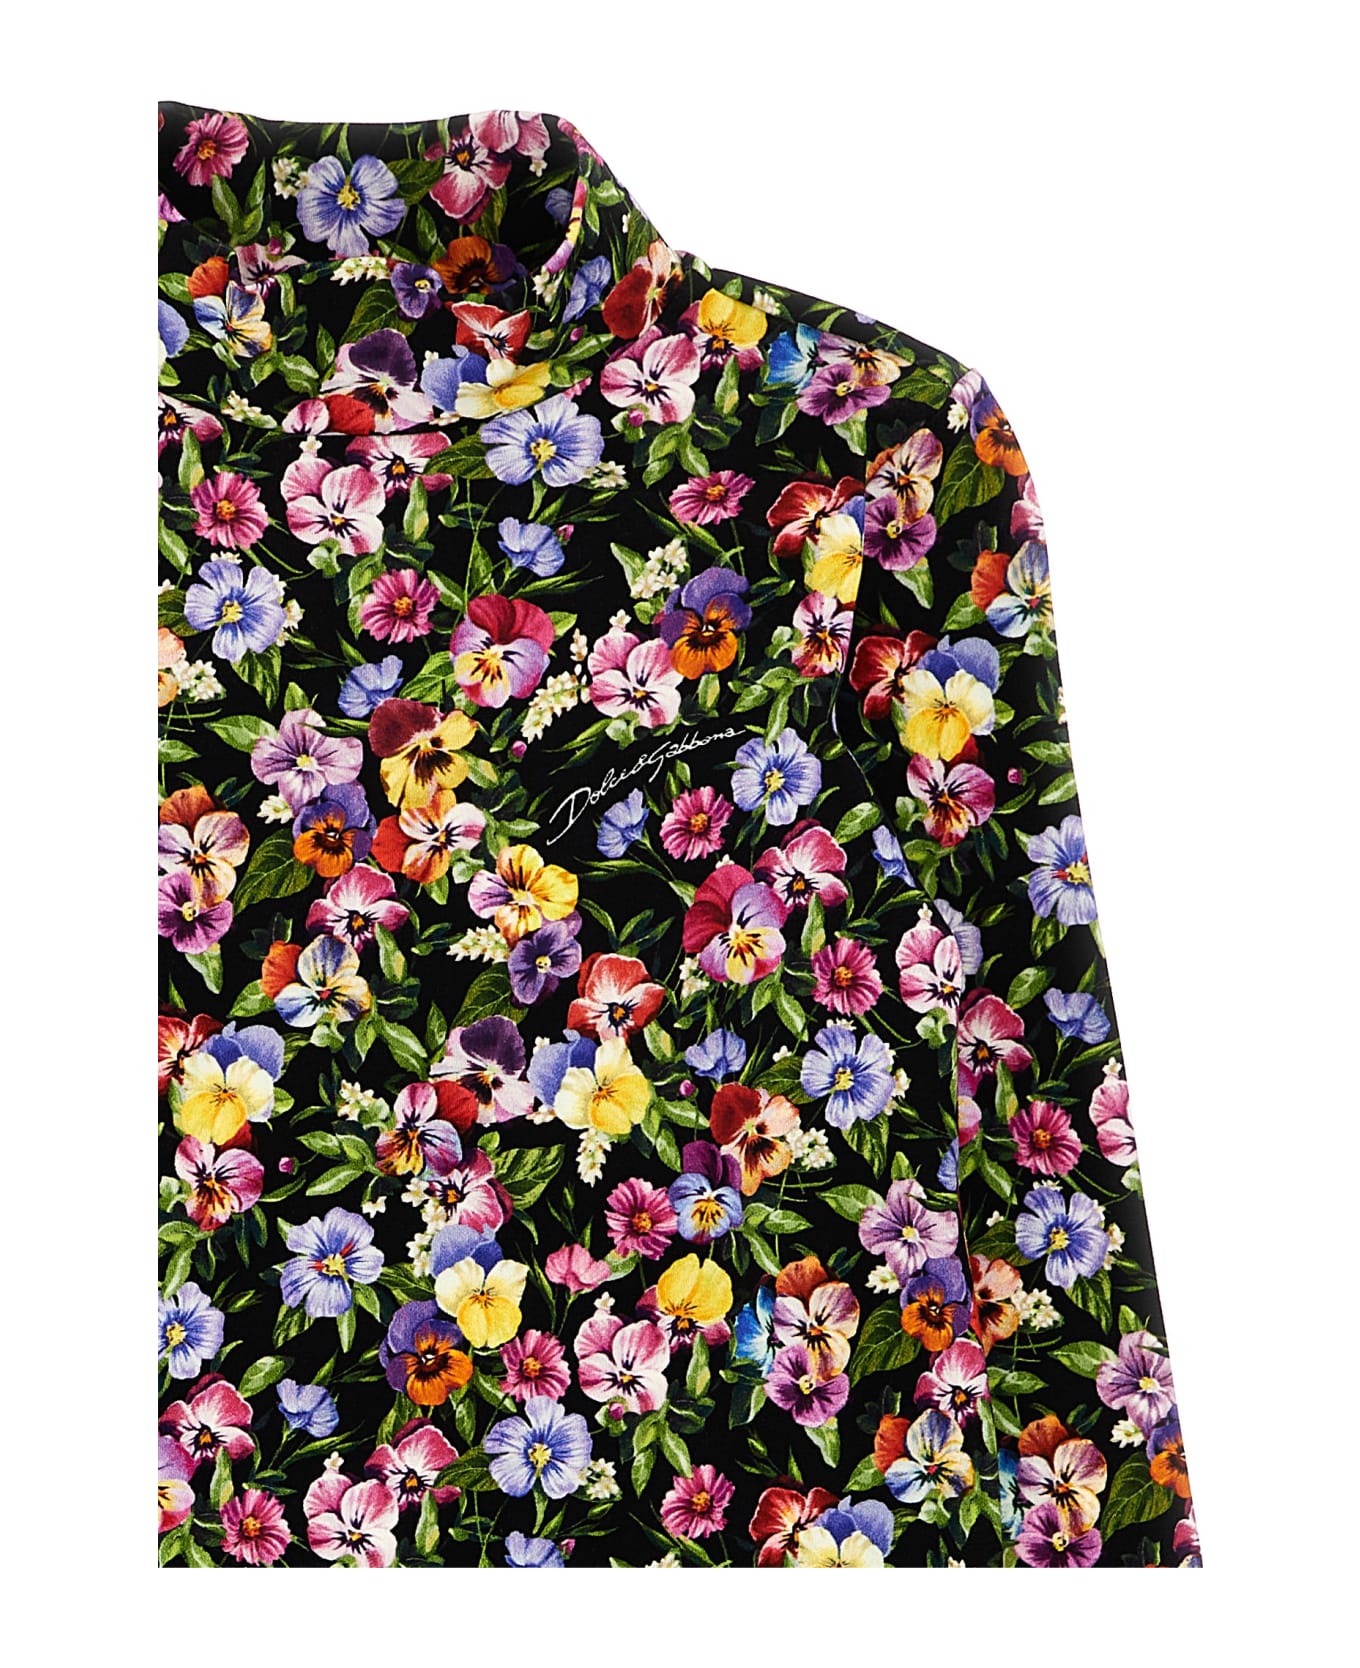 Dolce & Gabbana 'violette' Sweater - Multicolor